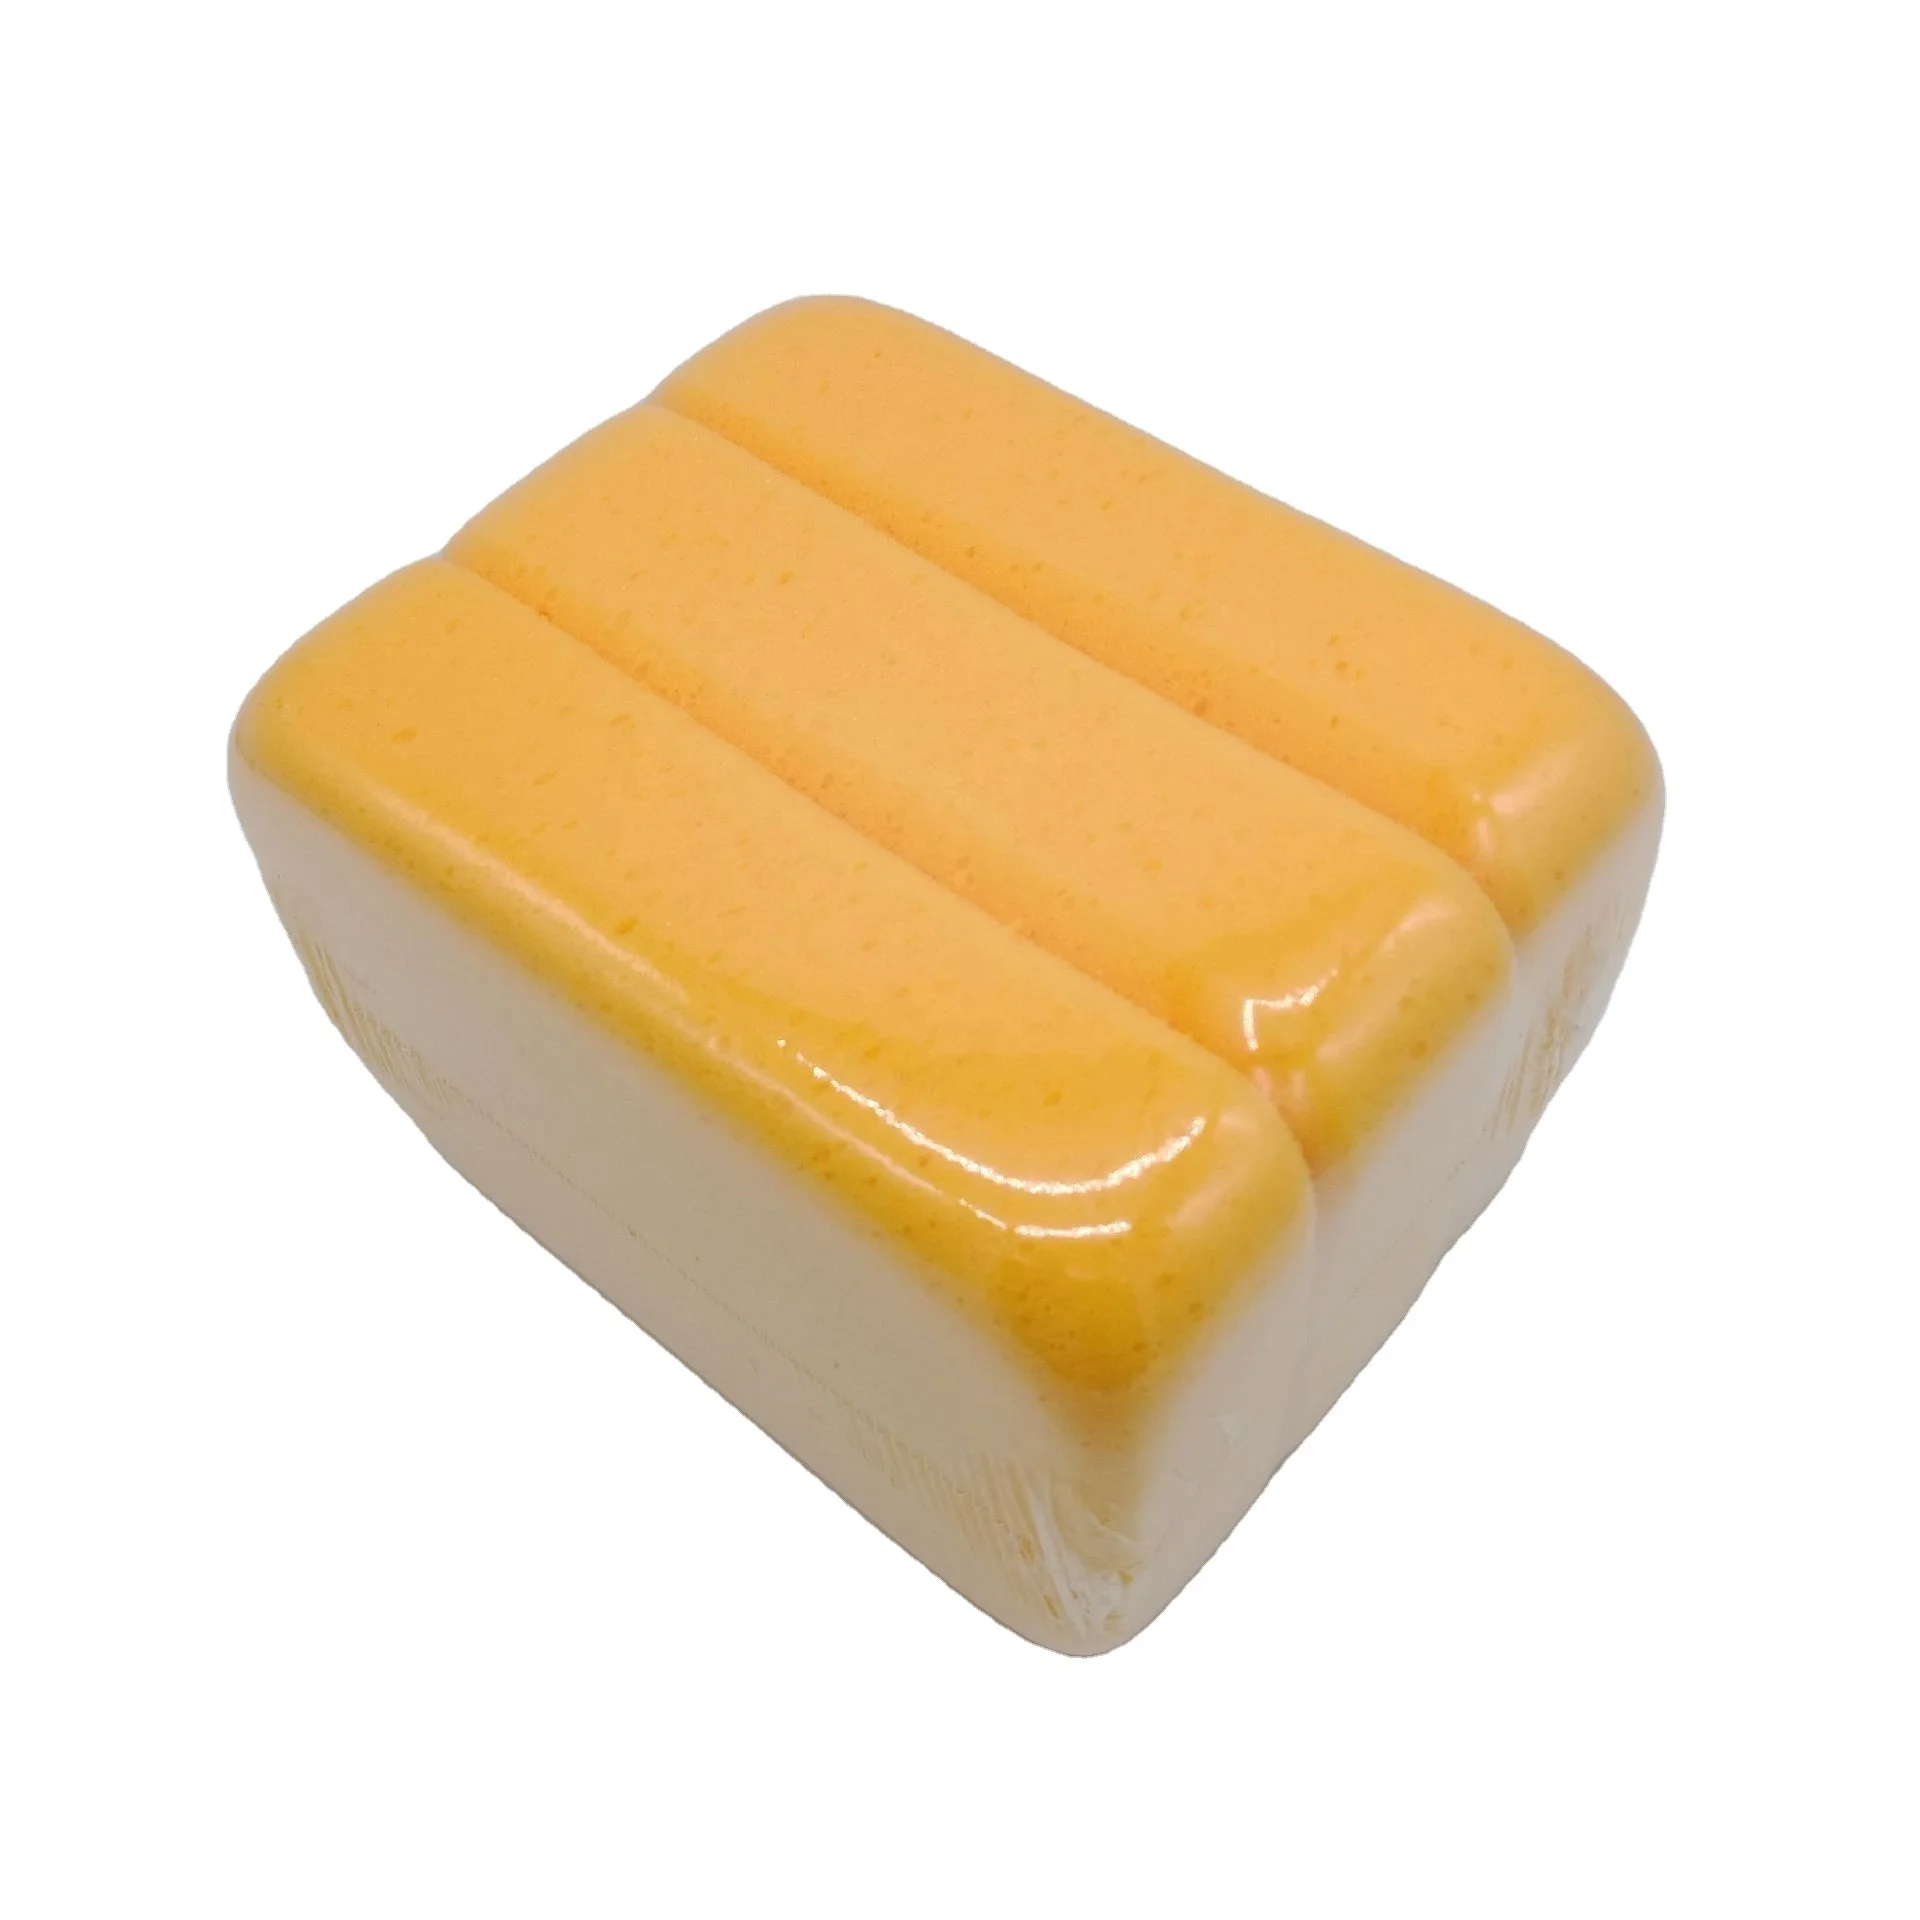 
High Density Ceramic Tile Grouting Sponge Special Cleaning Sponge Ceramic Tile Cleaning Sponge  (1600154089934)